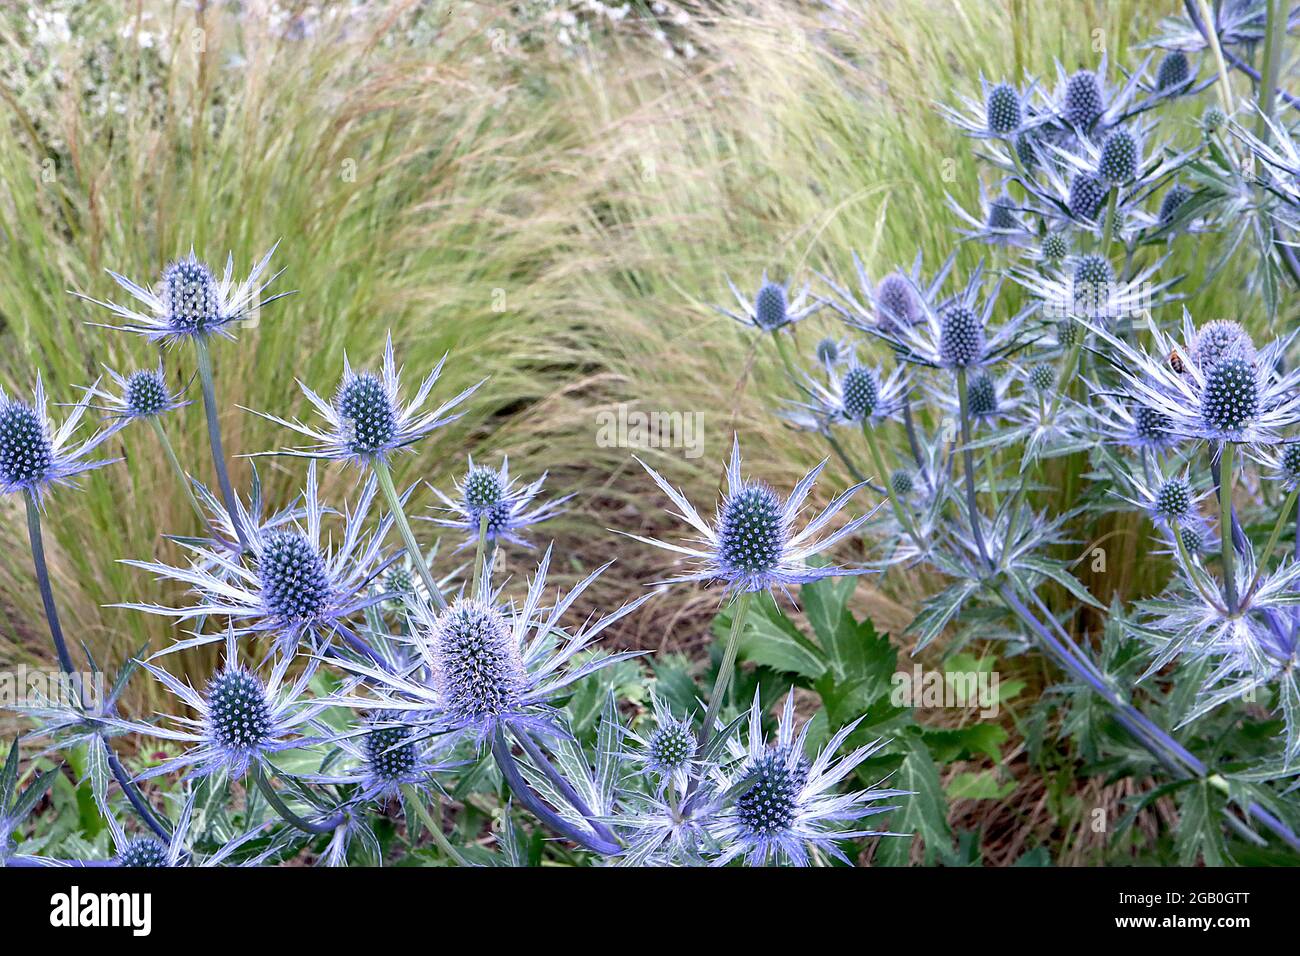 Eryngium x zabelii Big Blue Sea Holly Big Blue – têtes de fleurs en forme de cône au-dessus de bractées bleues argentées, juin, Angleterre, Royaume-Uni Banque D'Images